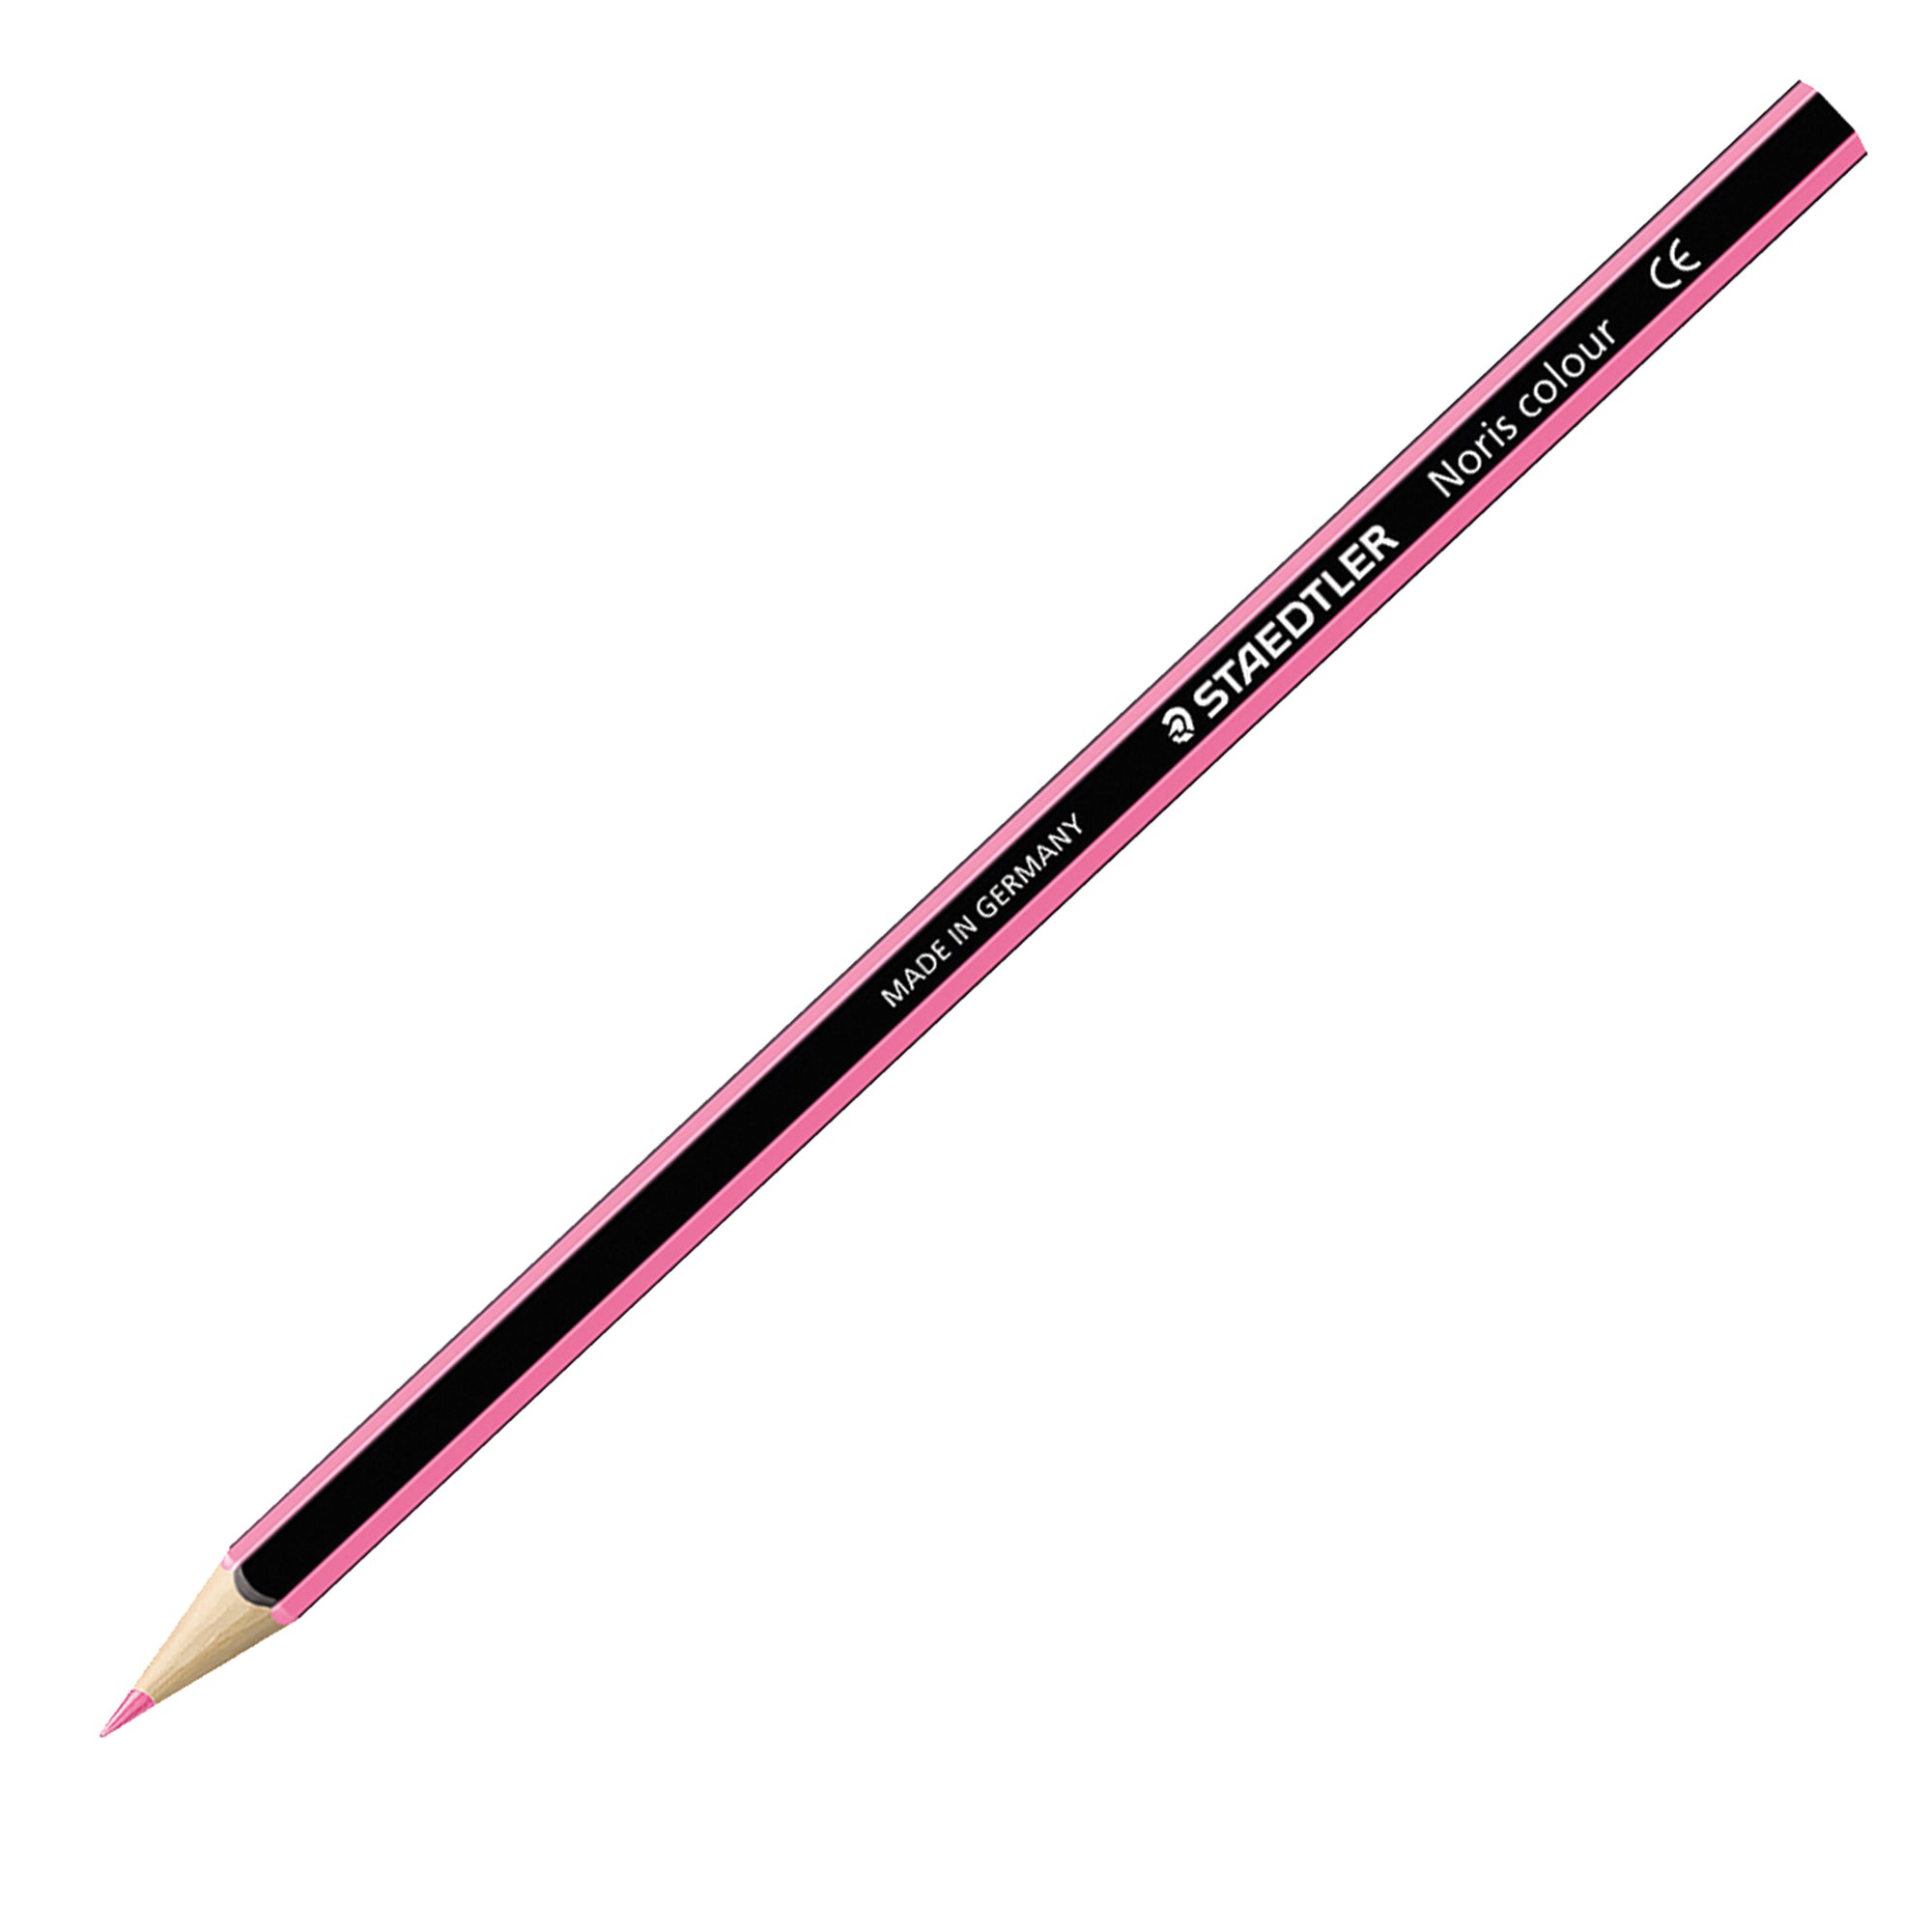 staedtler-astuccio-36-matite-noris-colour-wopex-colori-assortiti